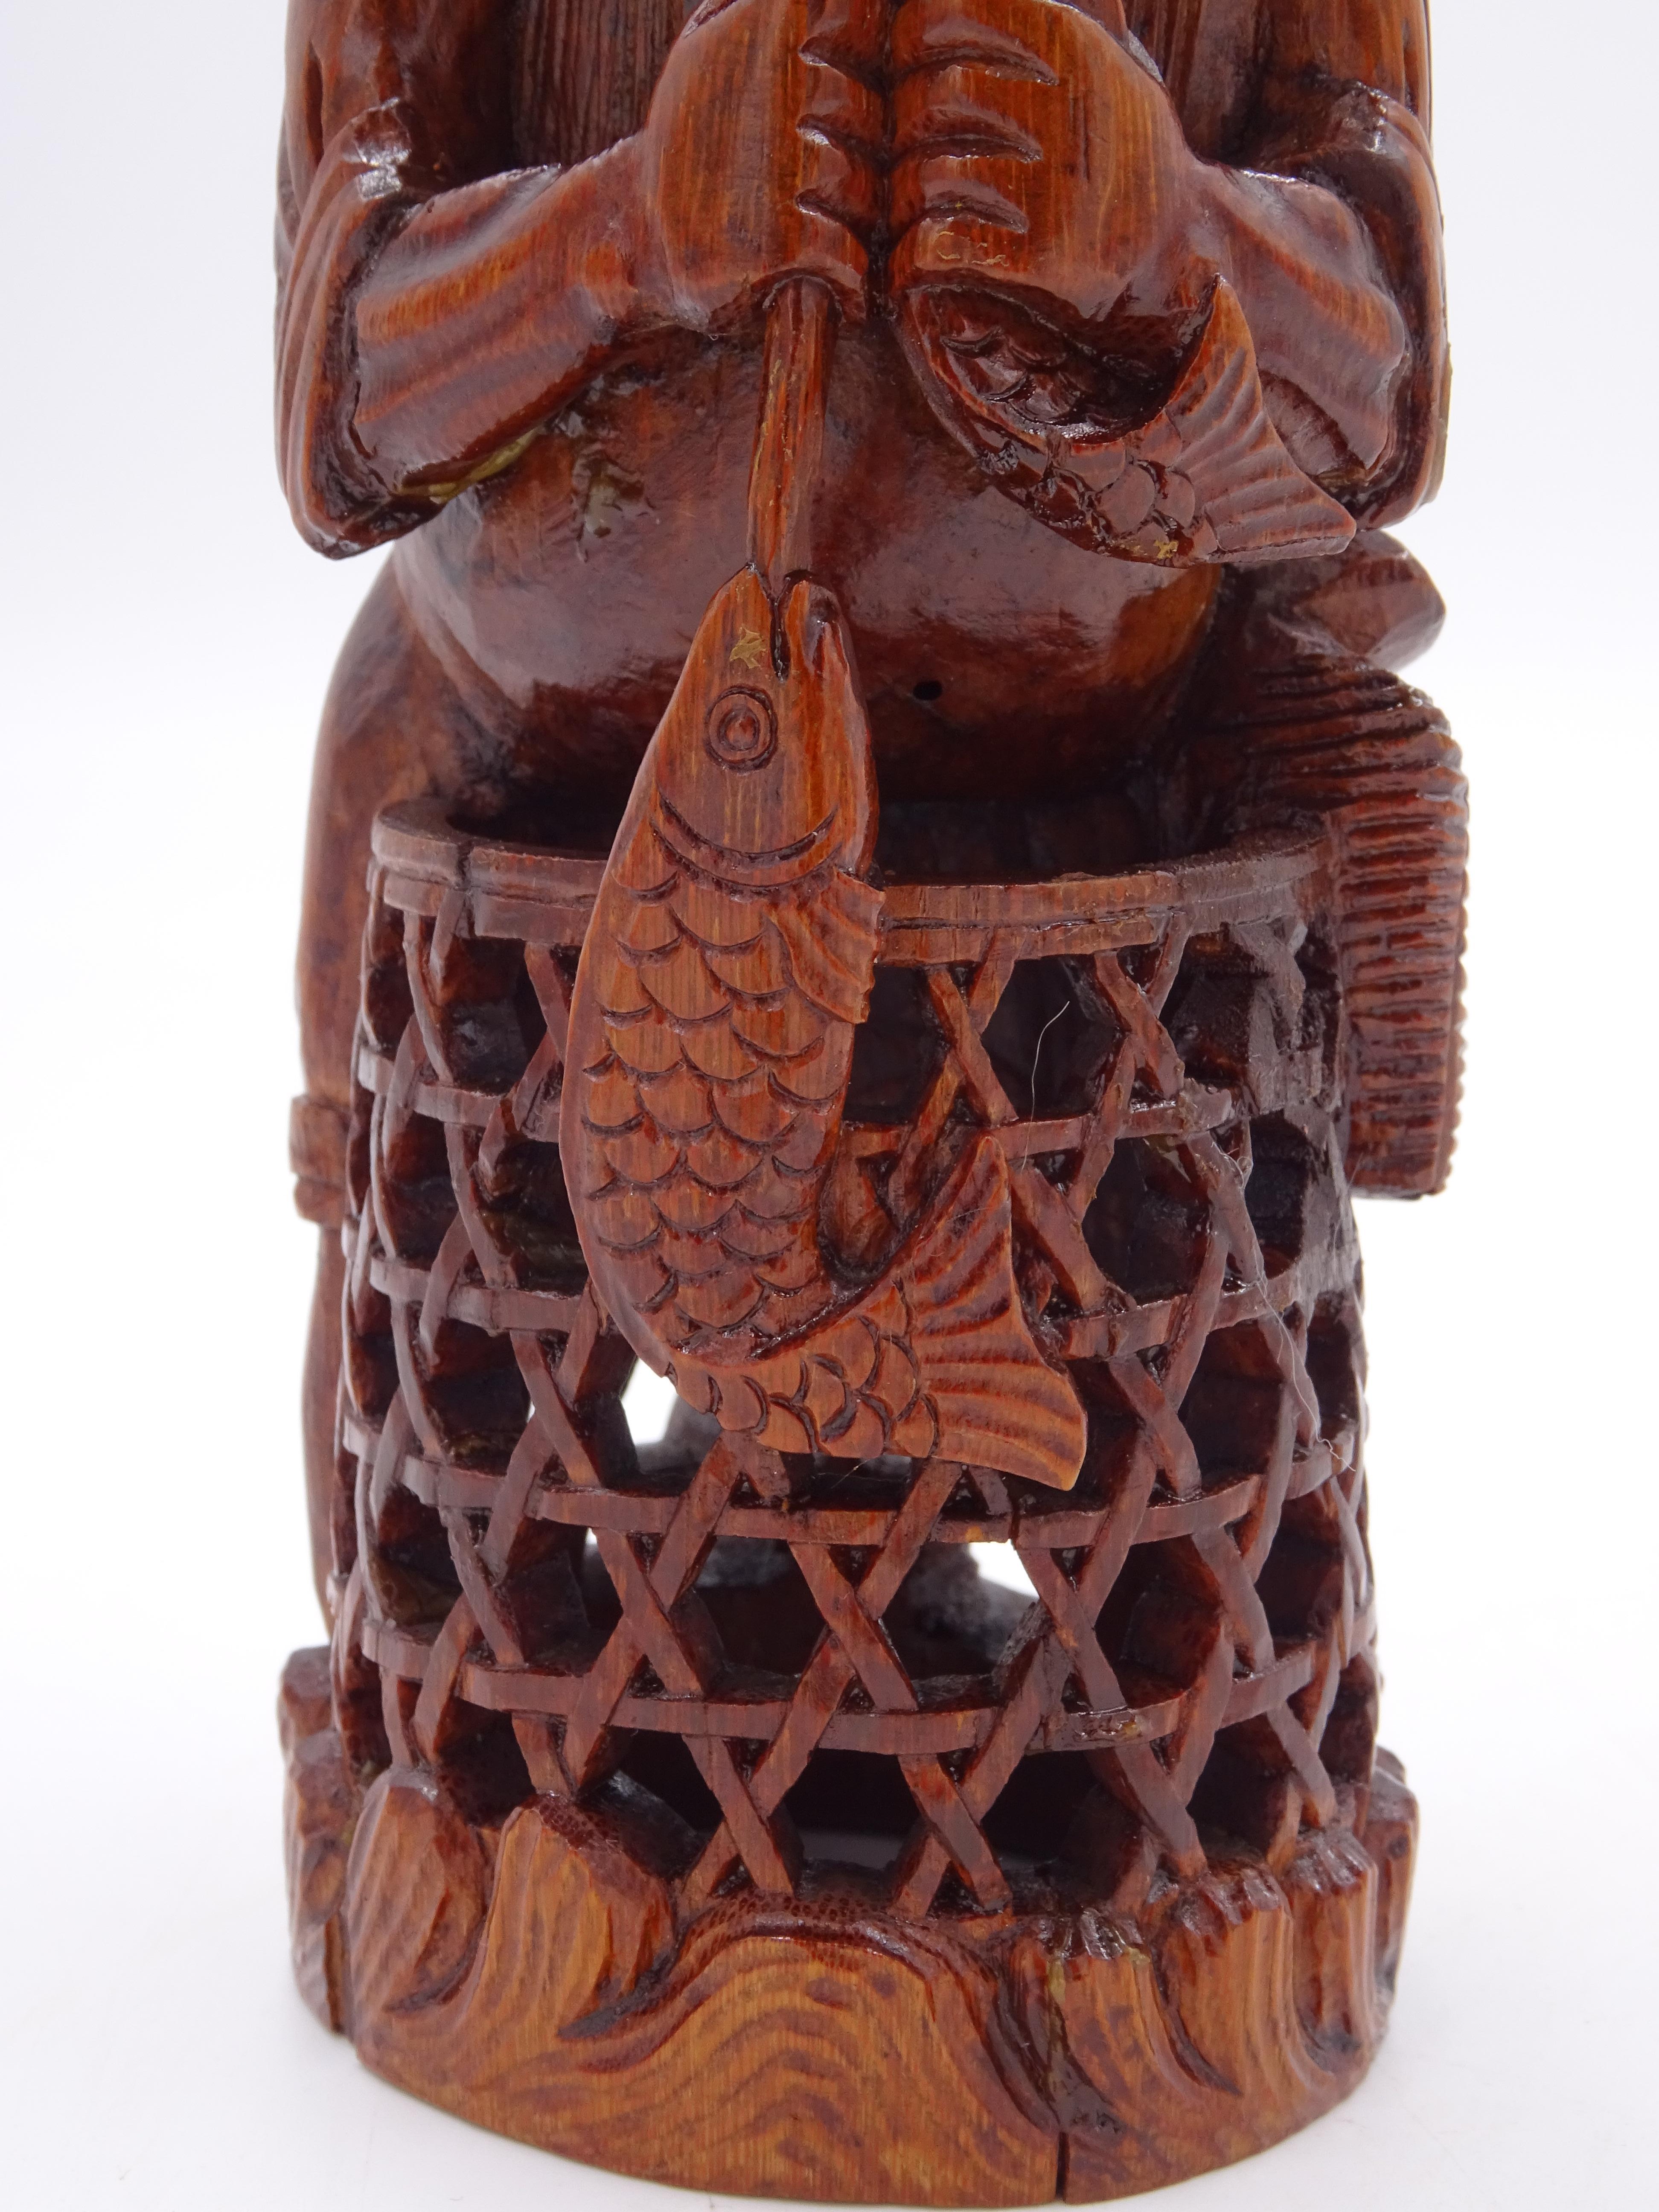 Bambusholzskulptur, die einen Fischer mit orientalischen Zügen, langem Bart und Kopfbedeckung darstellt, der zwei Fische in der Hand hält.

Der untere Teil ist mit einem kunstvoll geschnitzten Fischernetz verziert. 
Das Werk ist chinesischer